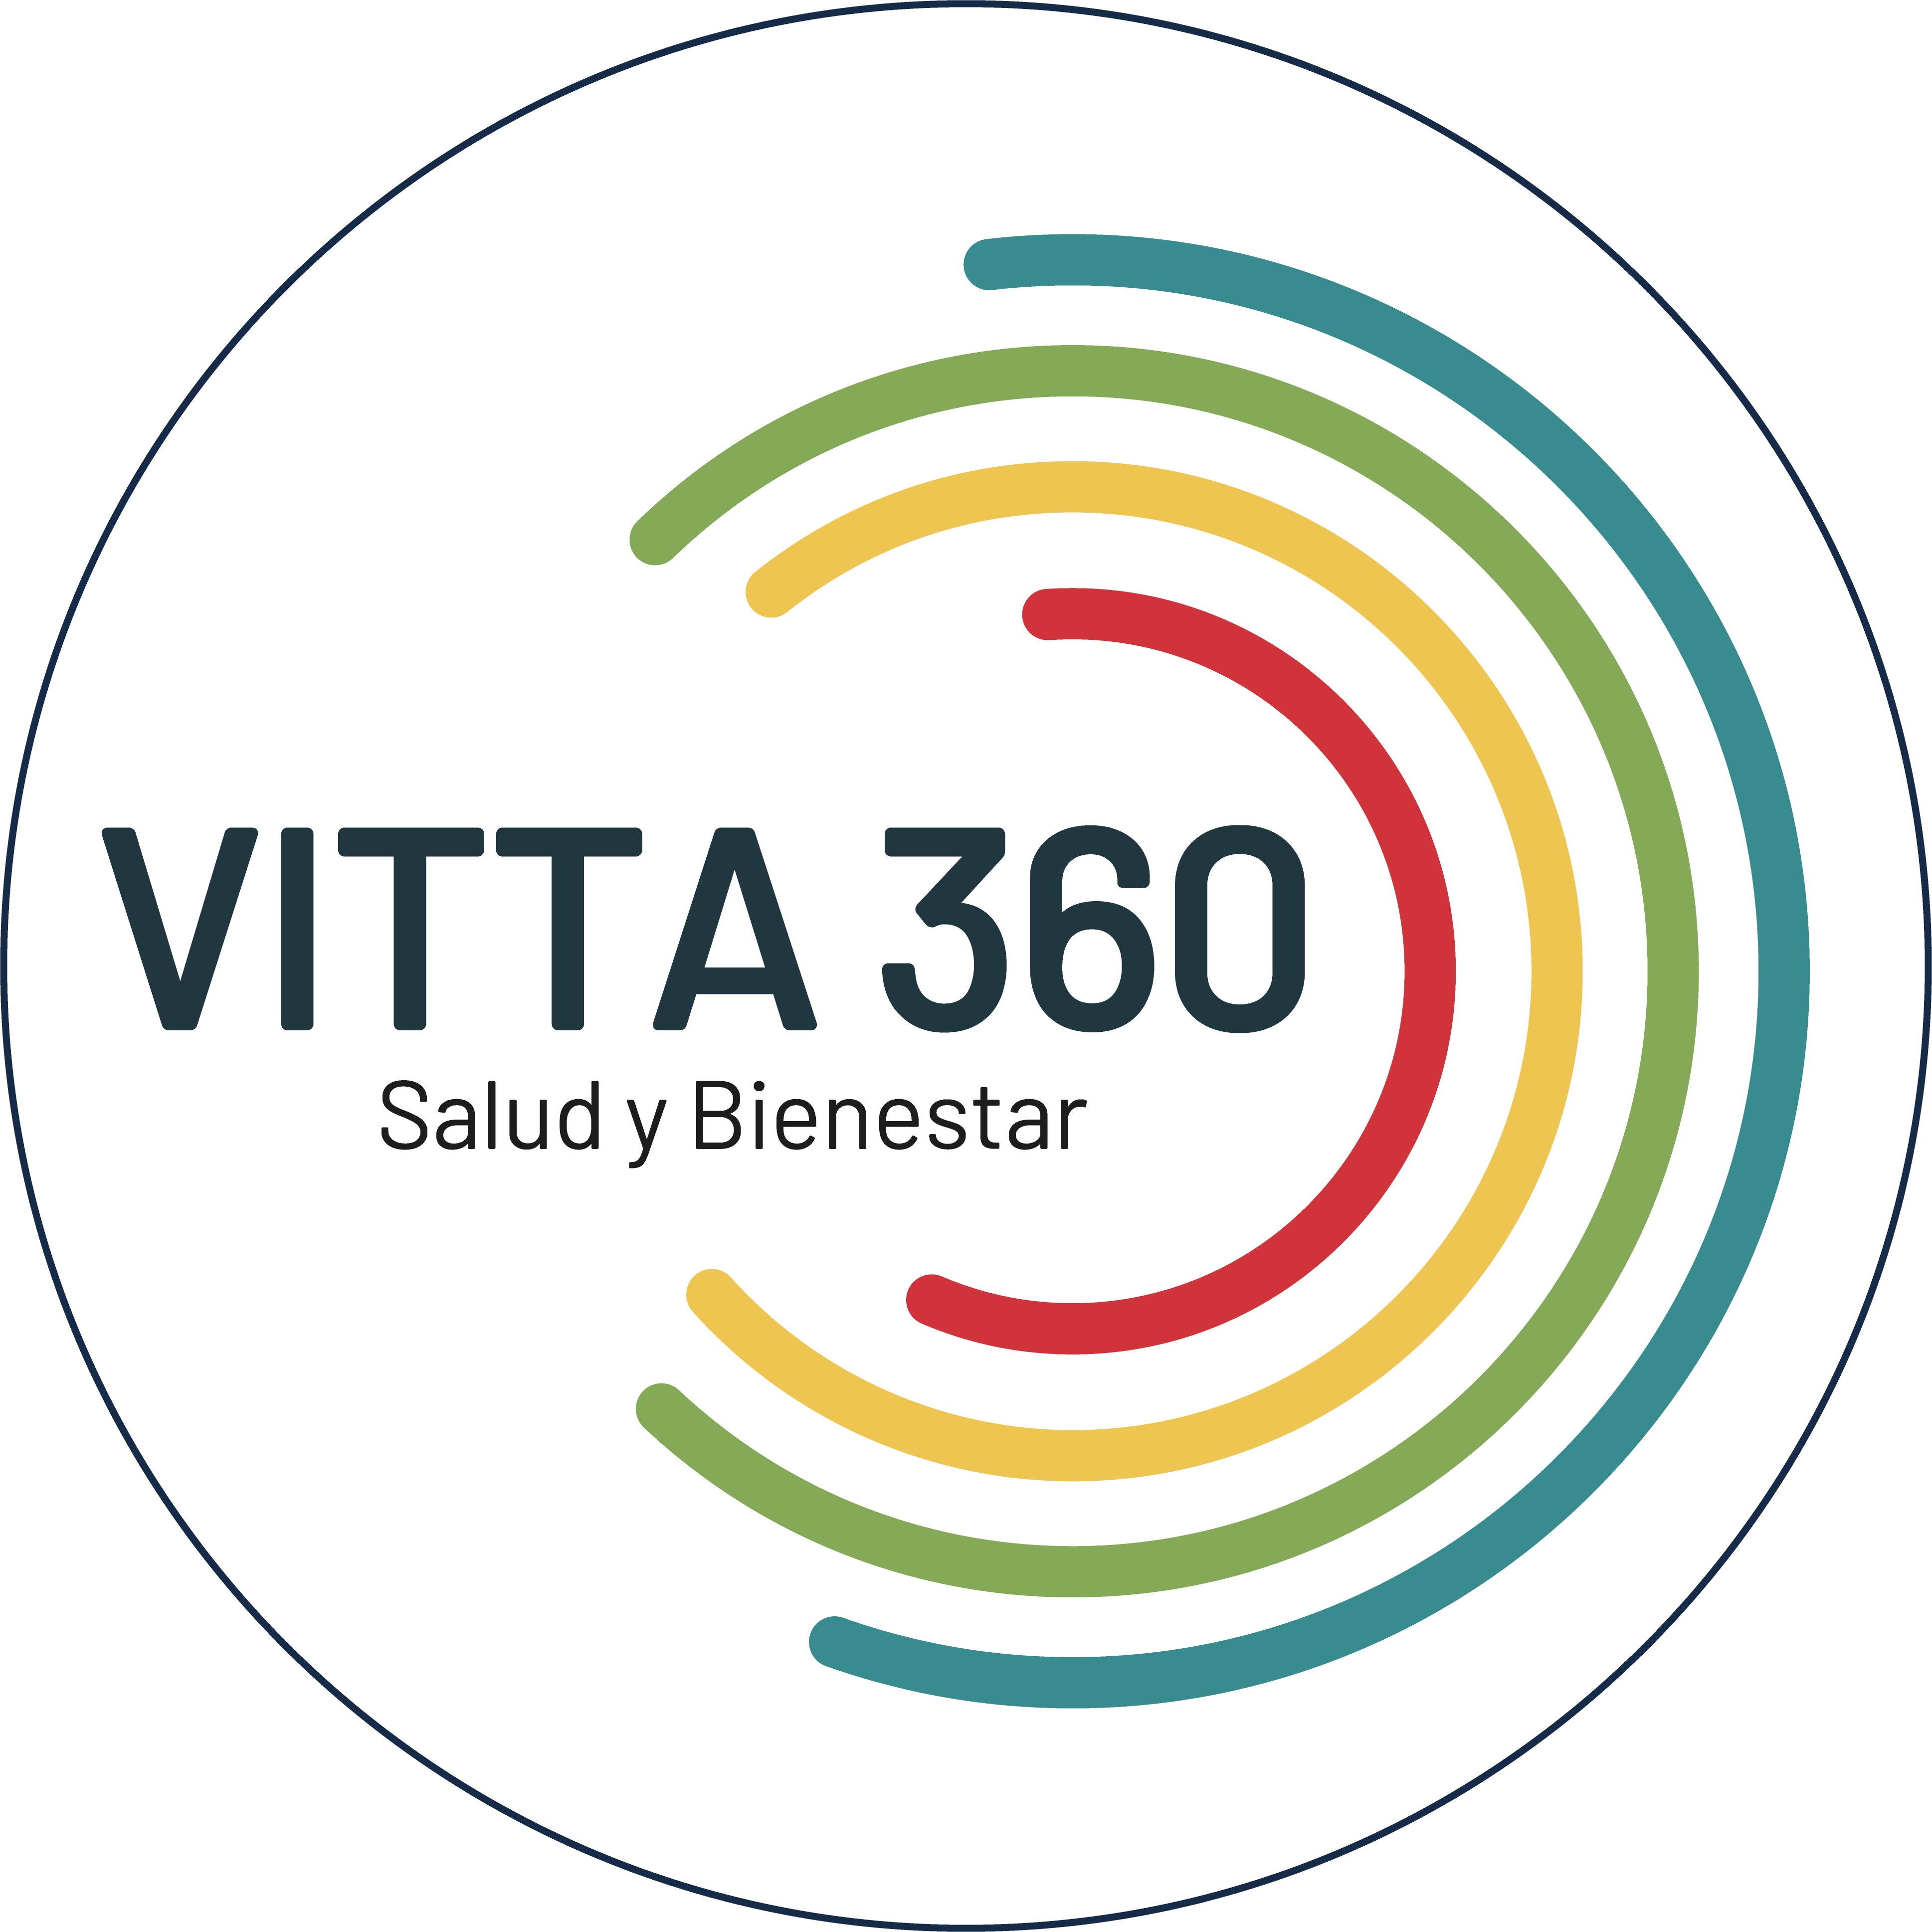 Vitta 360 logotipo logo